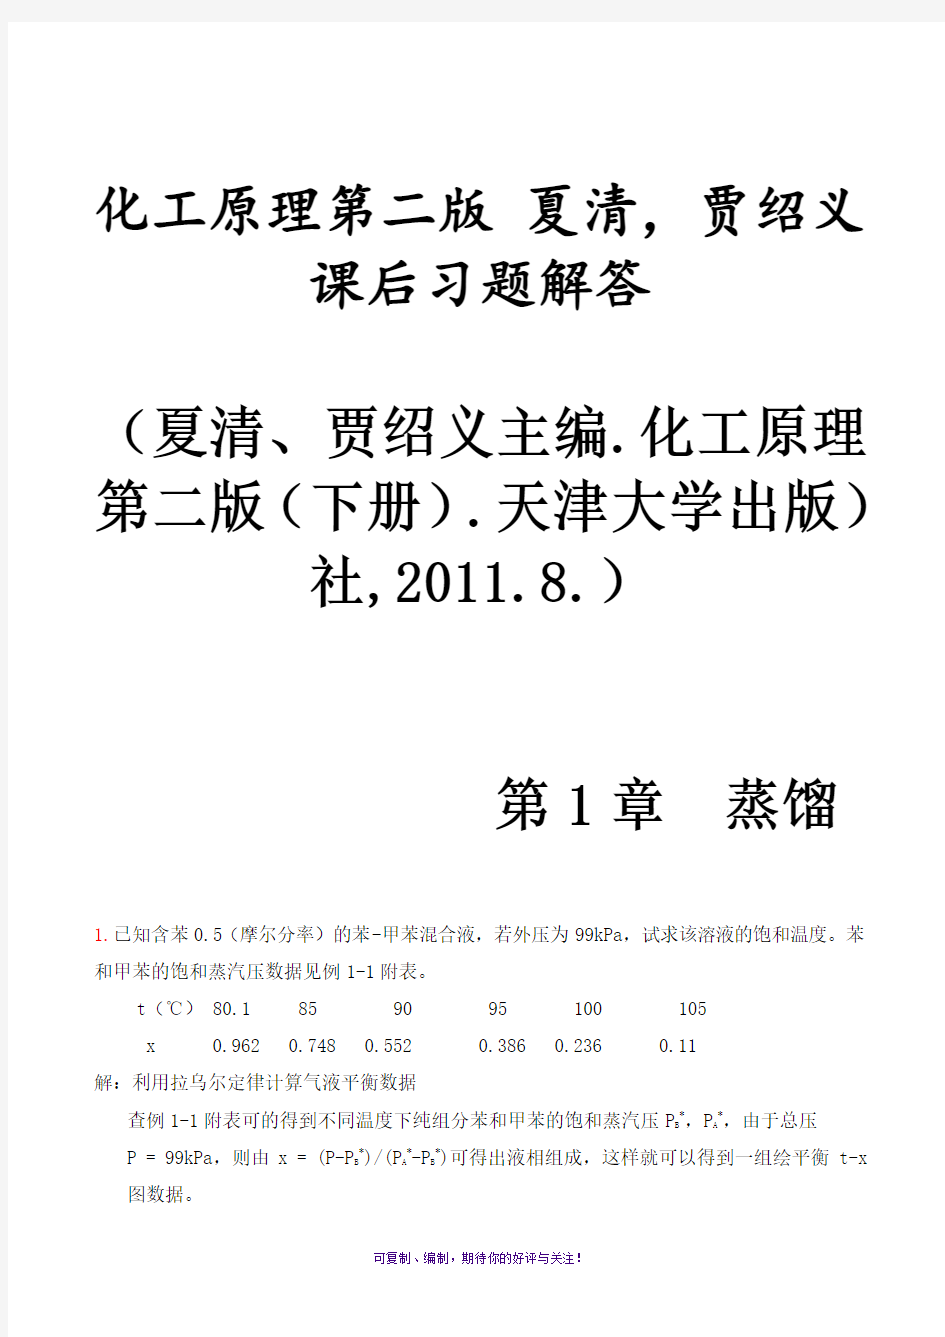 化工原理第二版(下册)夏清贾绍义课后习题解答带图